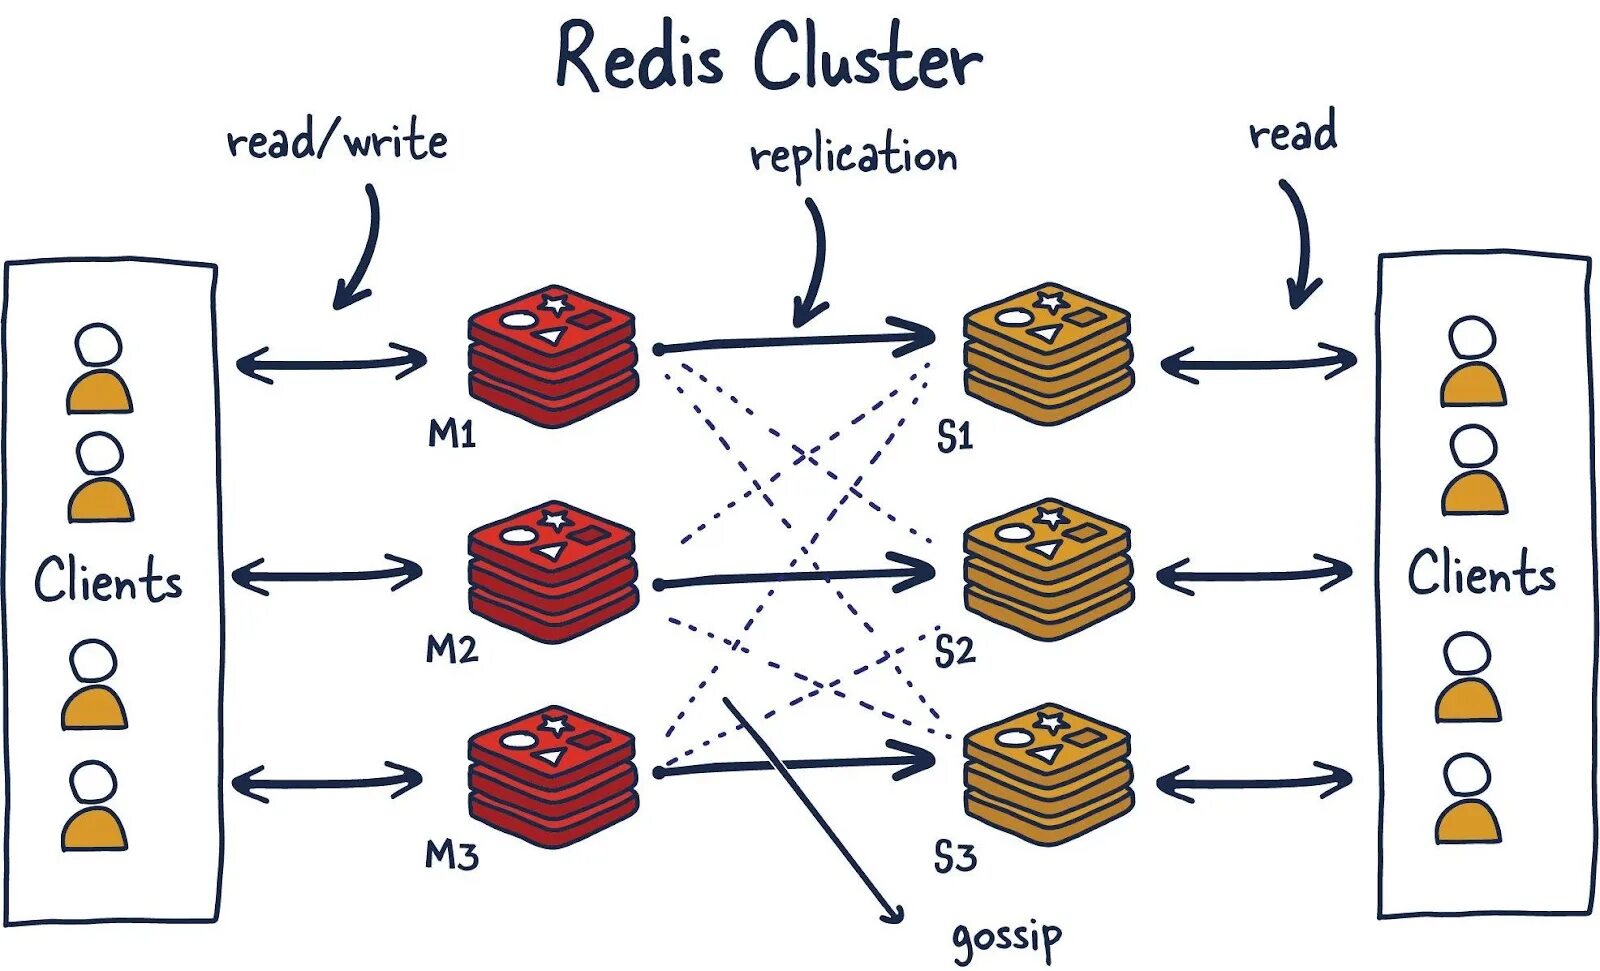 Redis cluster